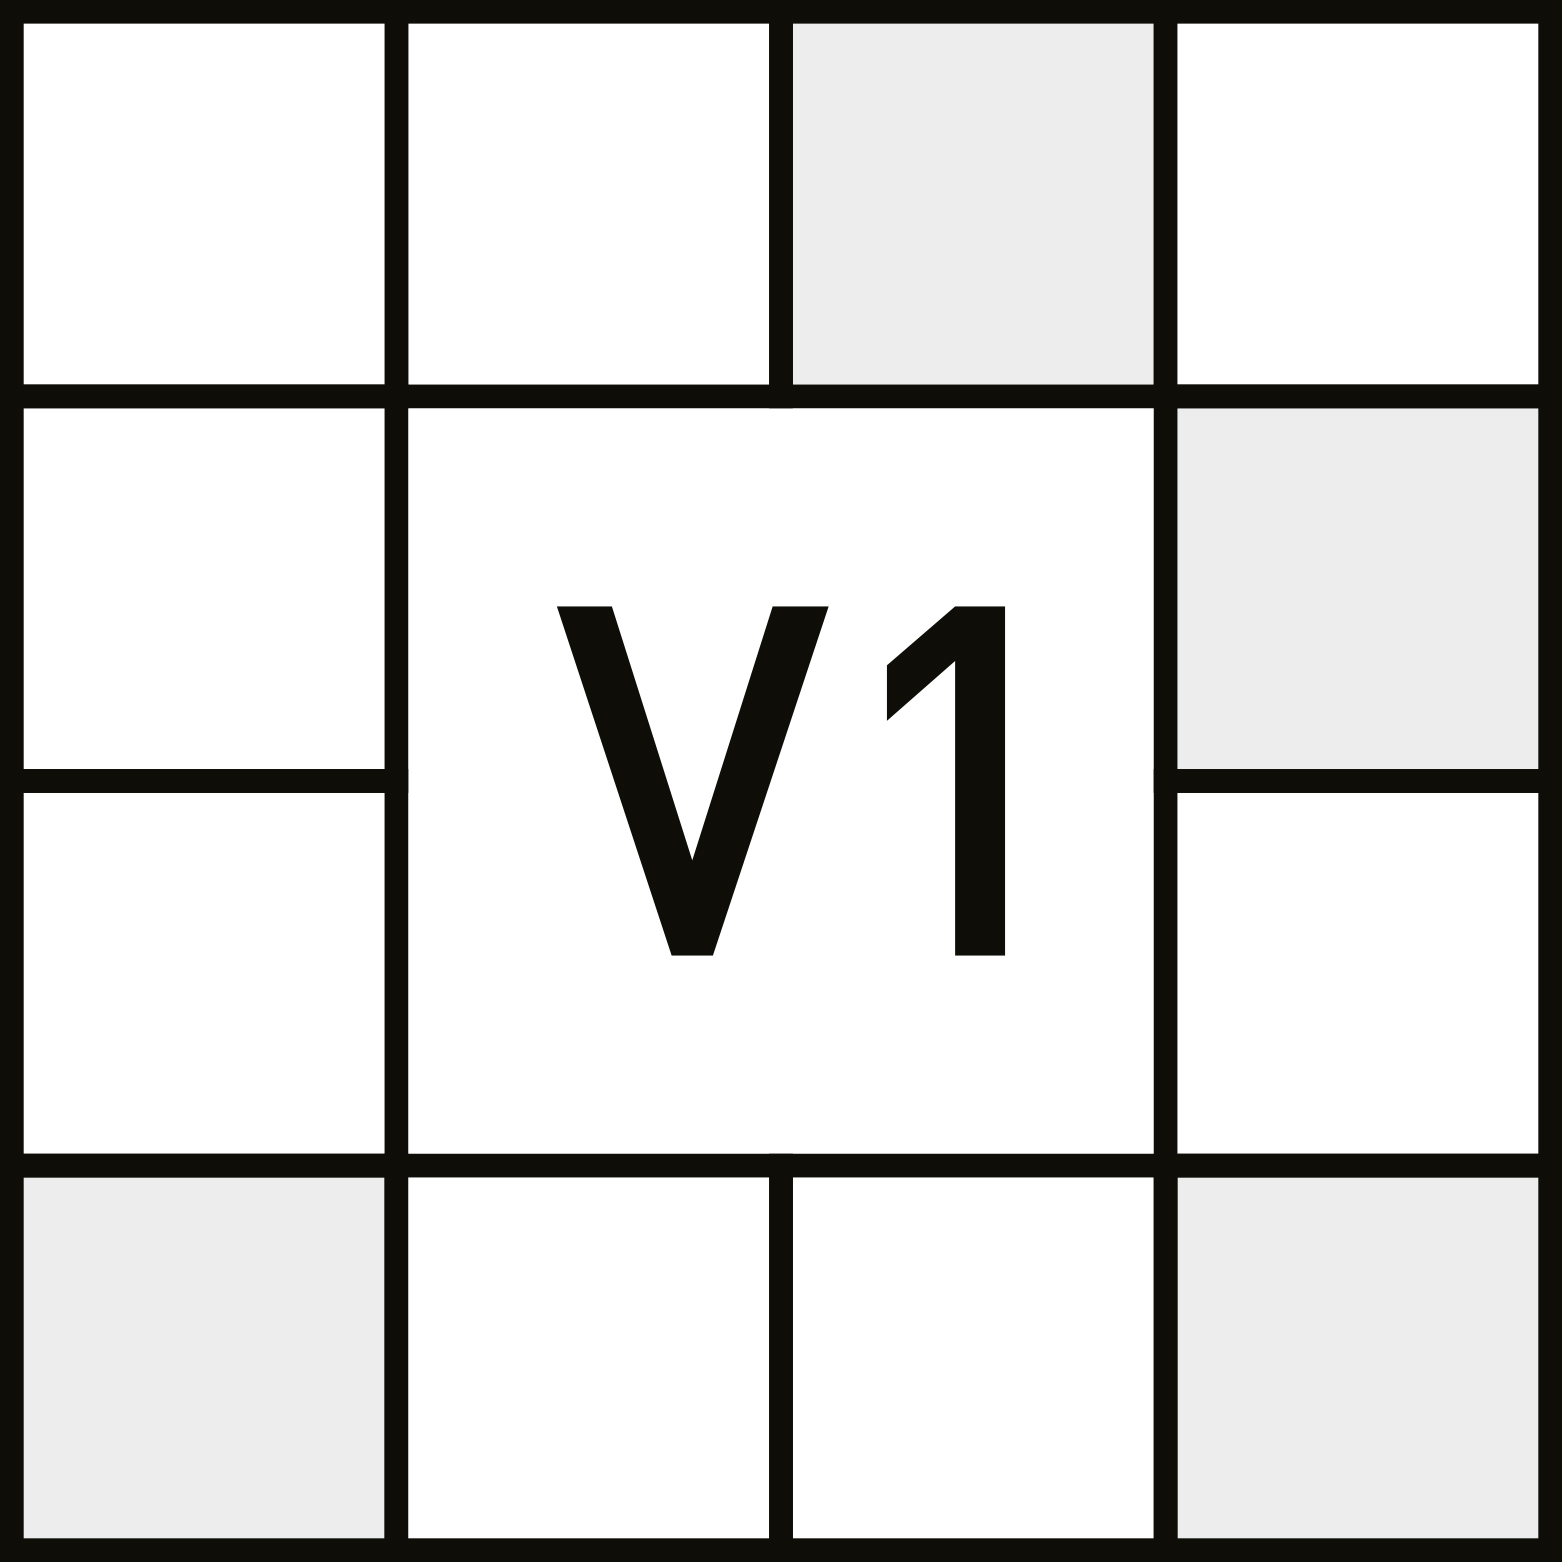 V1 - LIGEIRO - Aspecto uniforme. - ANSI A137.1 - Shade variation